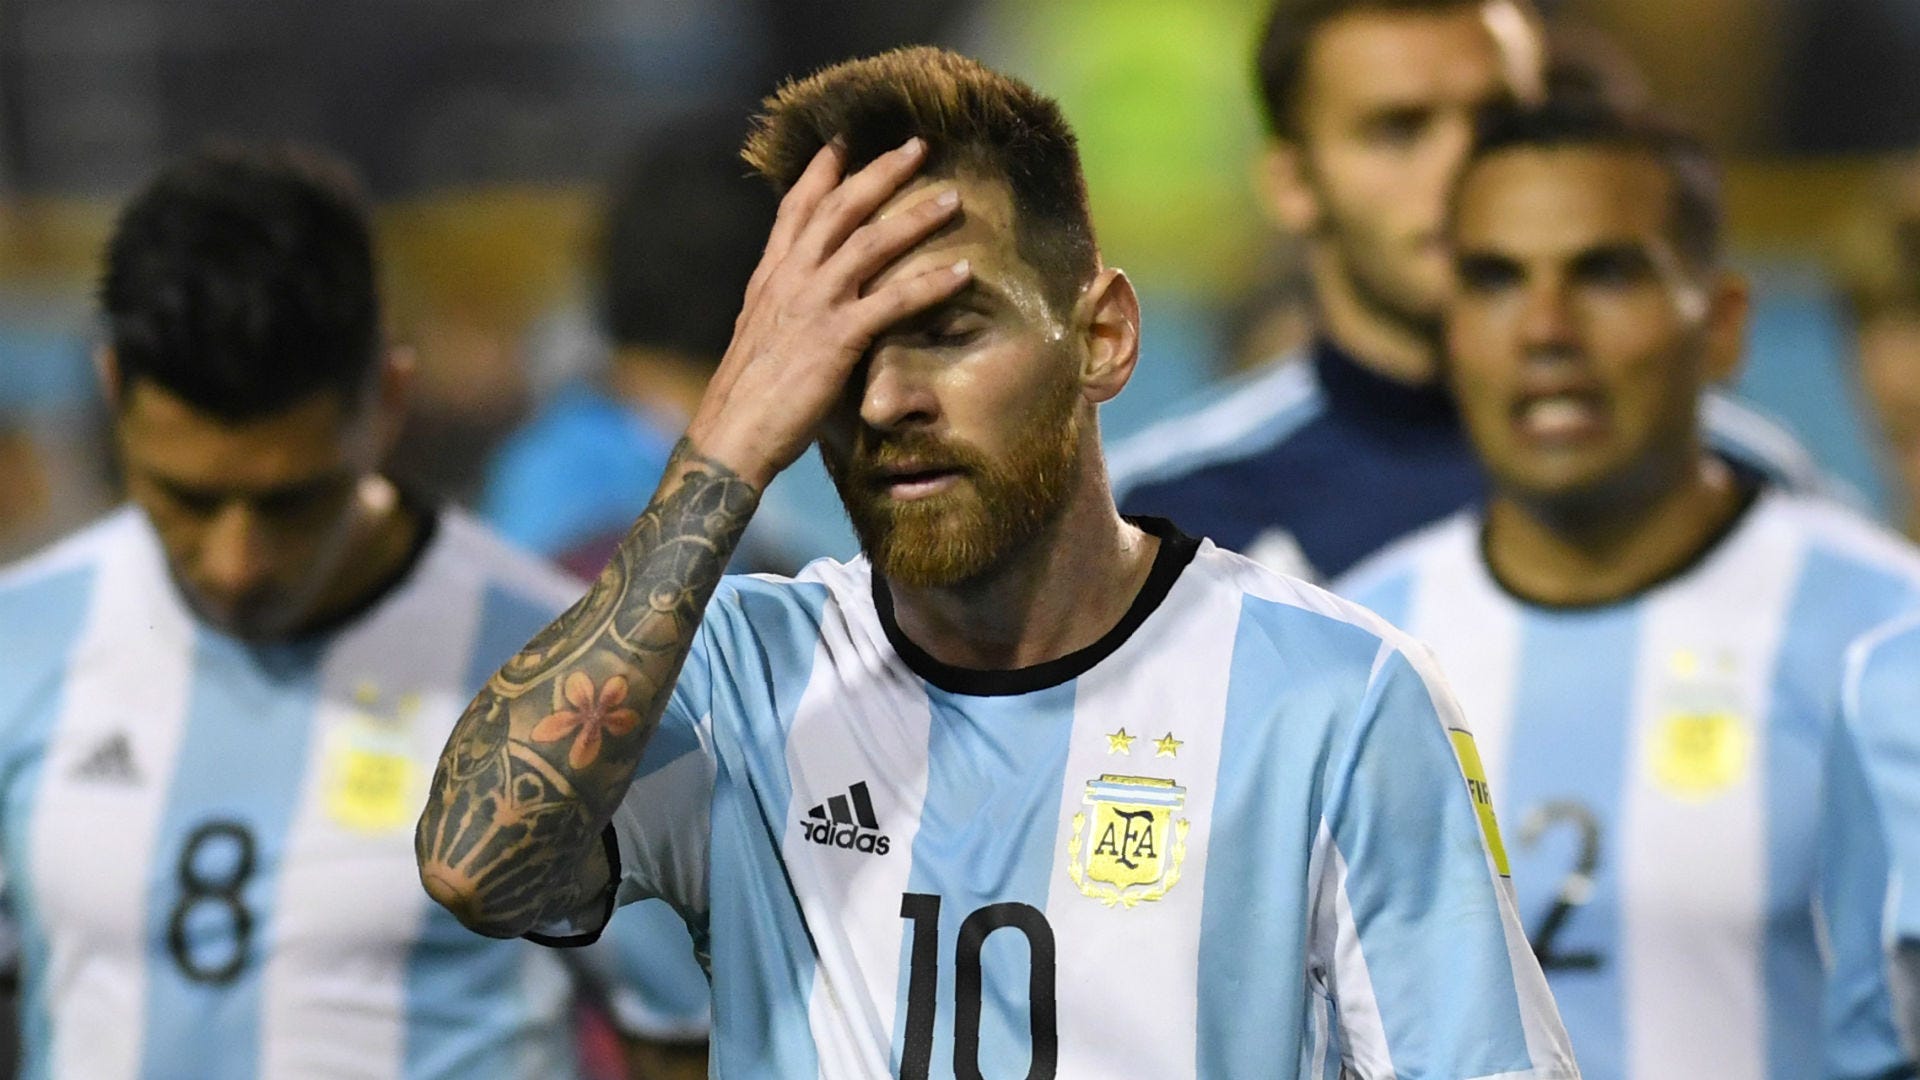 Argentina lãng phí và Messi nhìn chằm chằm vào thảm họa World Cup: Trong World Cup vừa qua, đội tuyển Argentina đã trải qua một thảm họa và không còn được kỳ vọng nhiều như trước đây. Tuy nhiên, thành công của đội bóng này không thể bỏ qua được, đặc biệt là với sự xuất sắc của cầu thủ Lionel Messi. Hãy cùng ngắm nhìn hình ảnh này để hiểu rõ hơn về lịch sử của bóng đá Argentina.